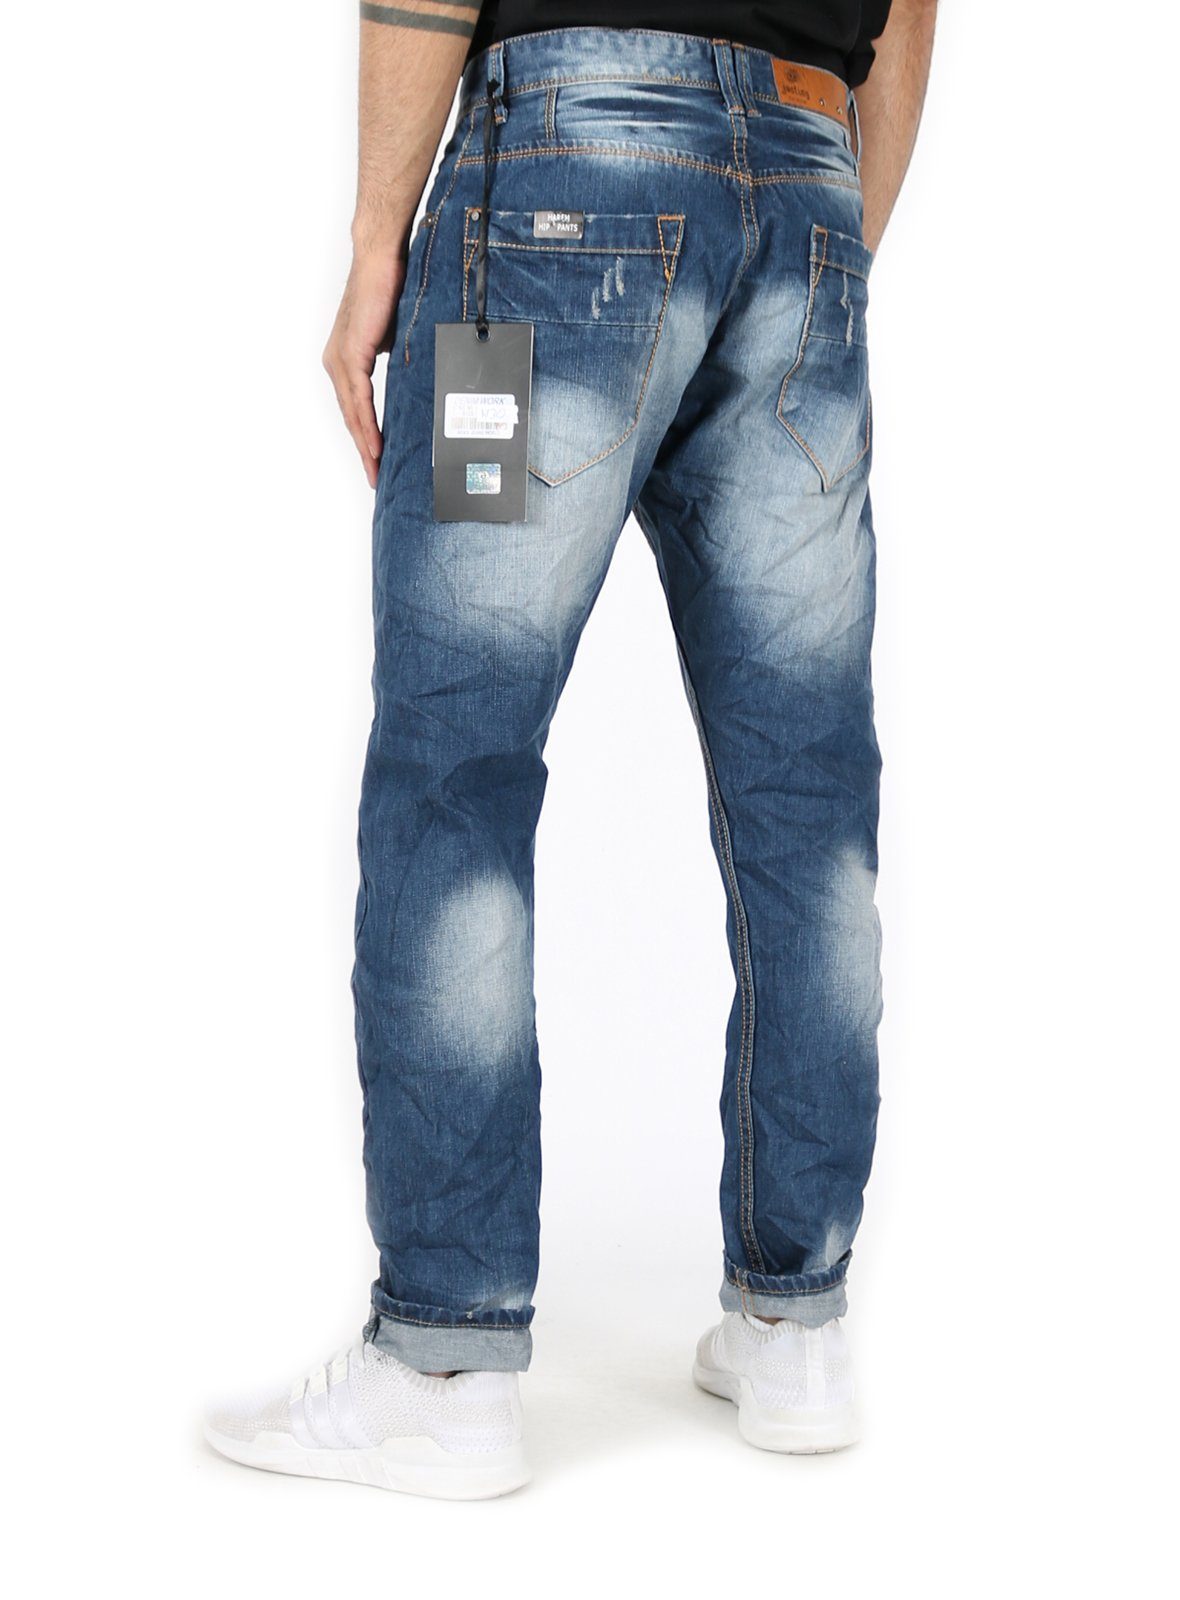 Justing Tapered-fit-Jeans Hose mit Kontrastnähten ST-03058#D 